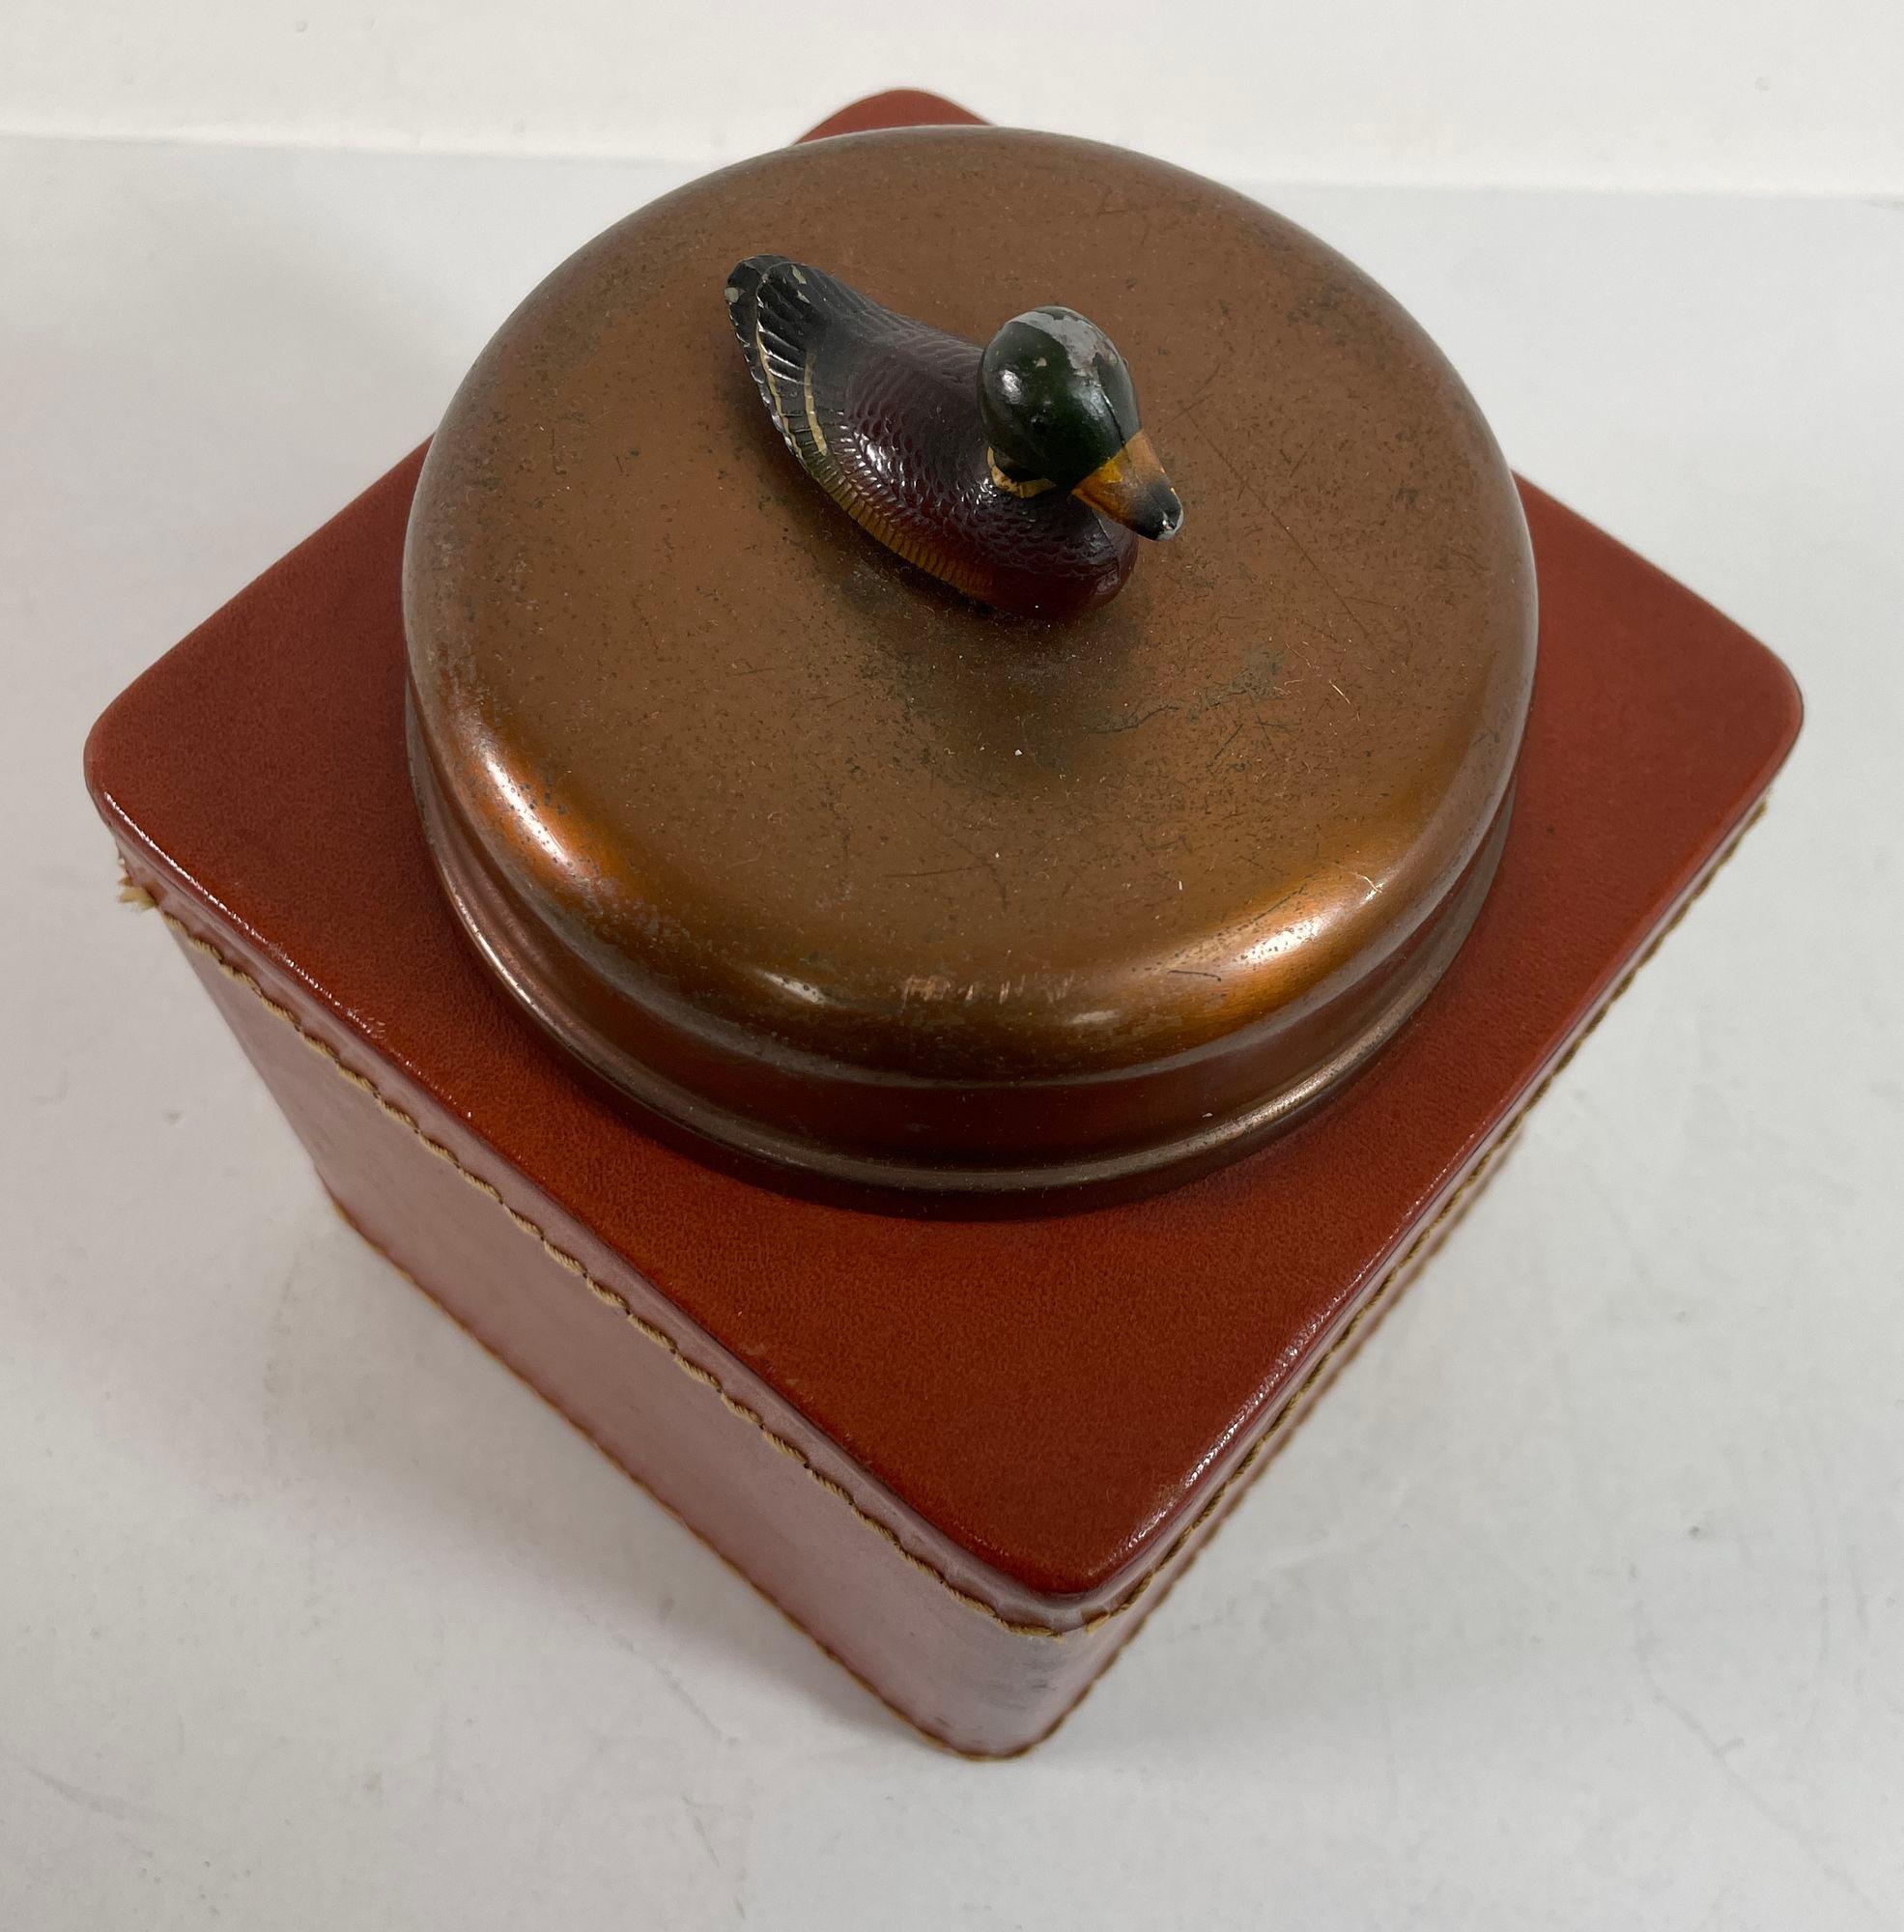 Vintage Traditional Mallard Duck Motif Leather Tobacco Humidor Jar.
Vintage Tabak Humidor quadratische Box in Cognac Farbe Leder eingewickelt.
CIRCA 1950, aus kupferfarbenem Metall, mit einer Lederhülle und einem Metalldeckel, der mit einer Skulptur